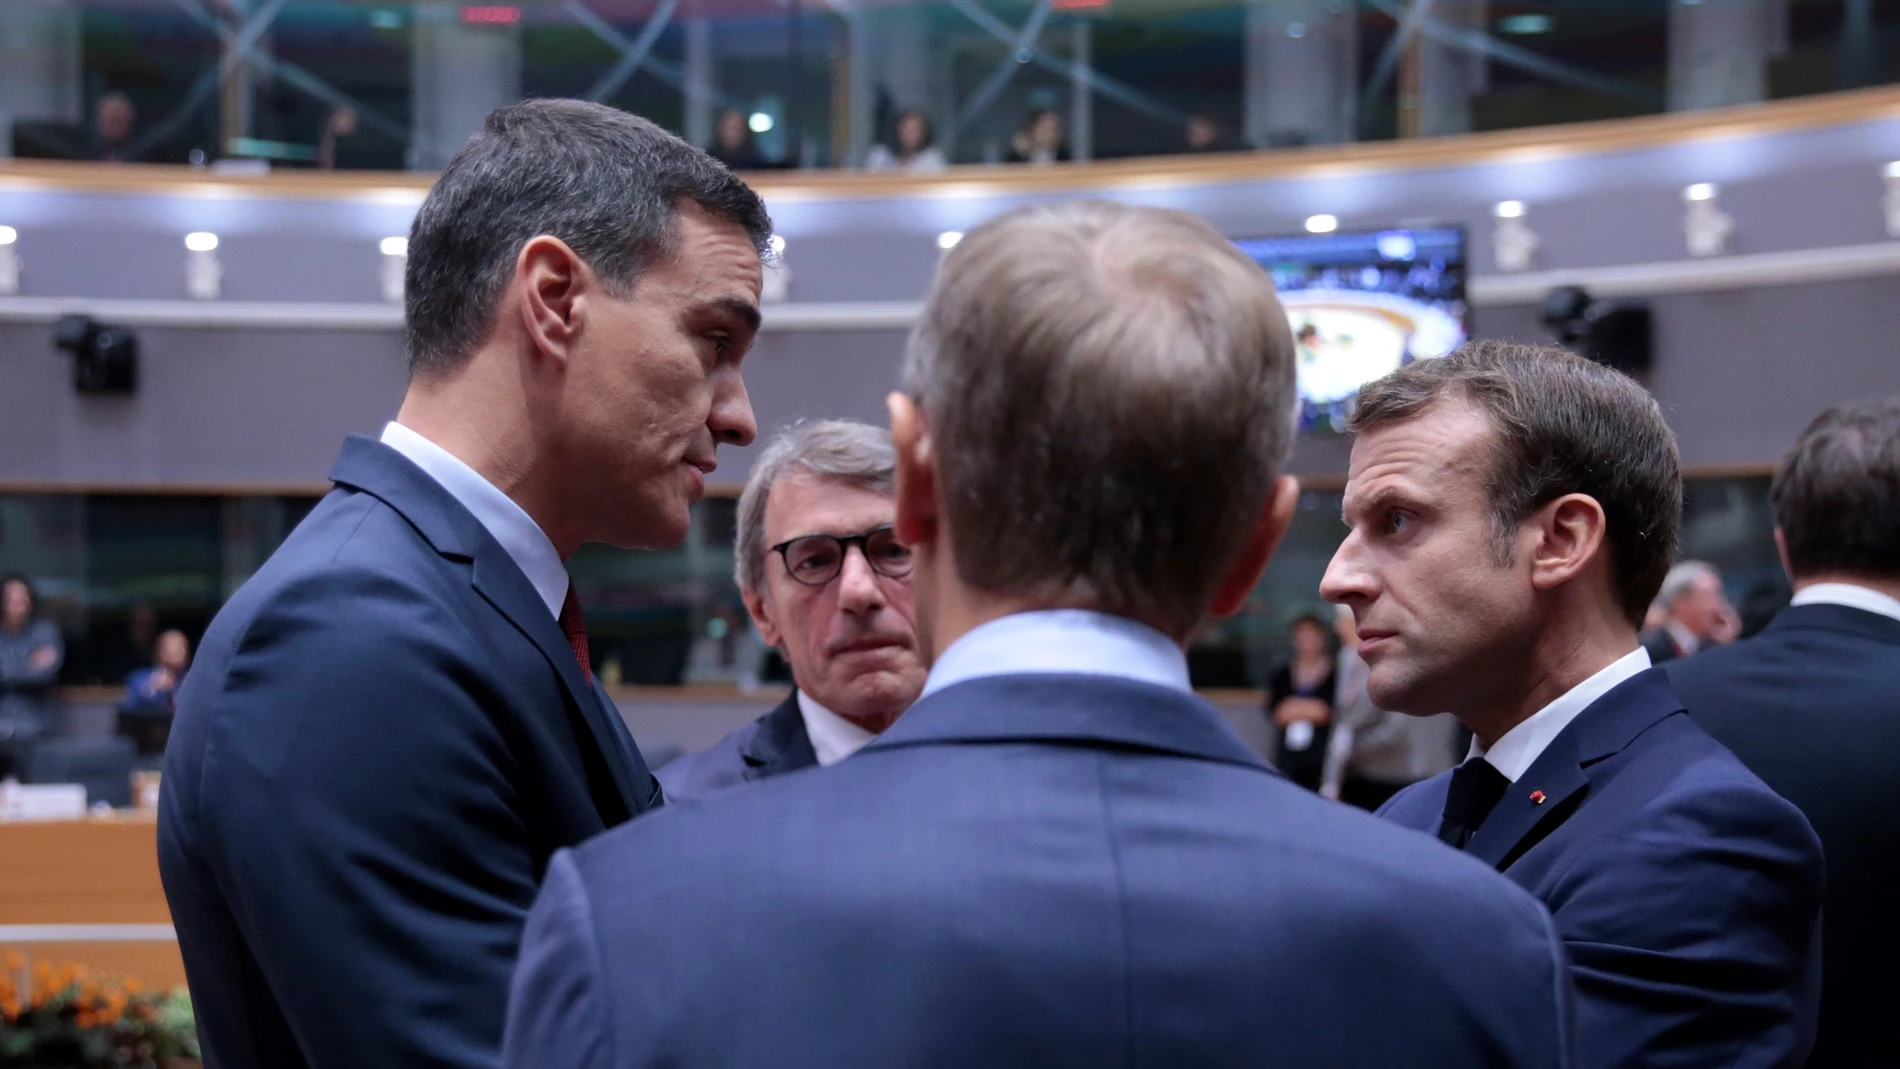 El presidente de España, Pedro Sánchez, conversa con su homólogo francés, Emmanuel Macro, frente a los presidentes del Parlamento Europeo, David Sassoli, y el Consejo Europeo, Donald Tusk